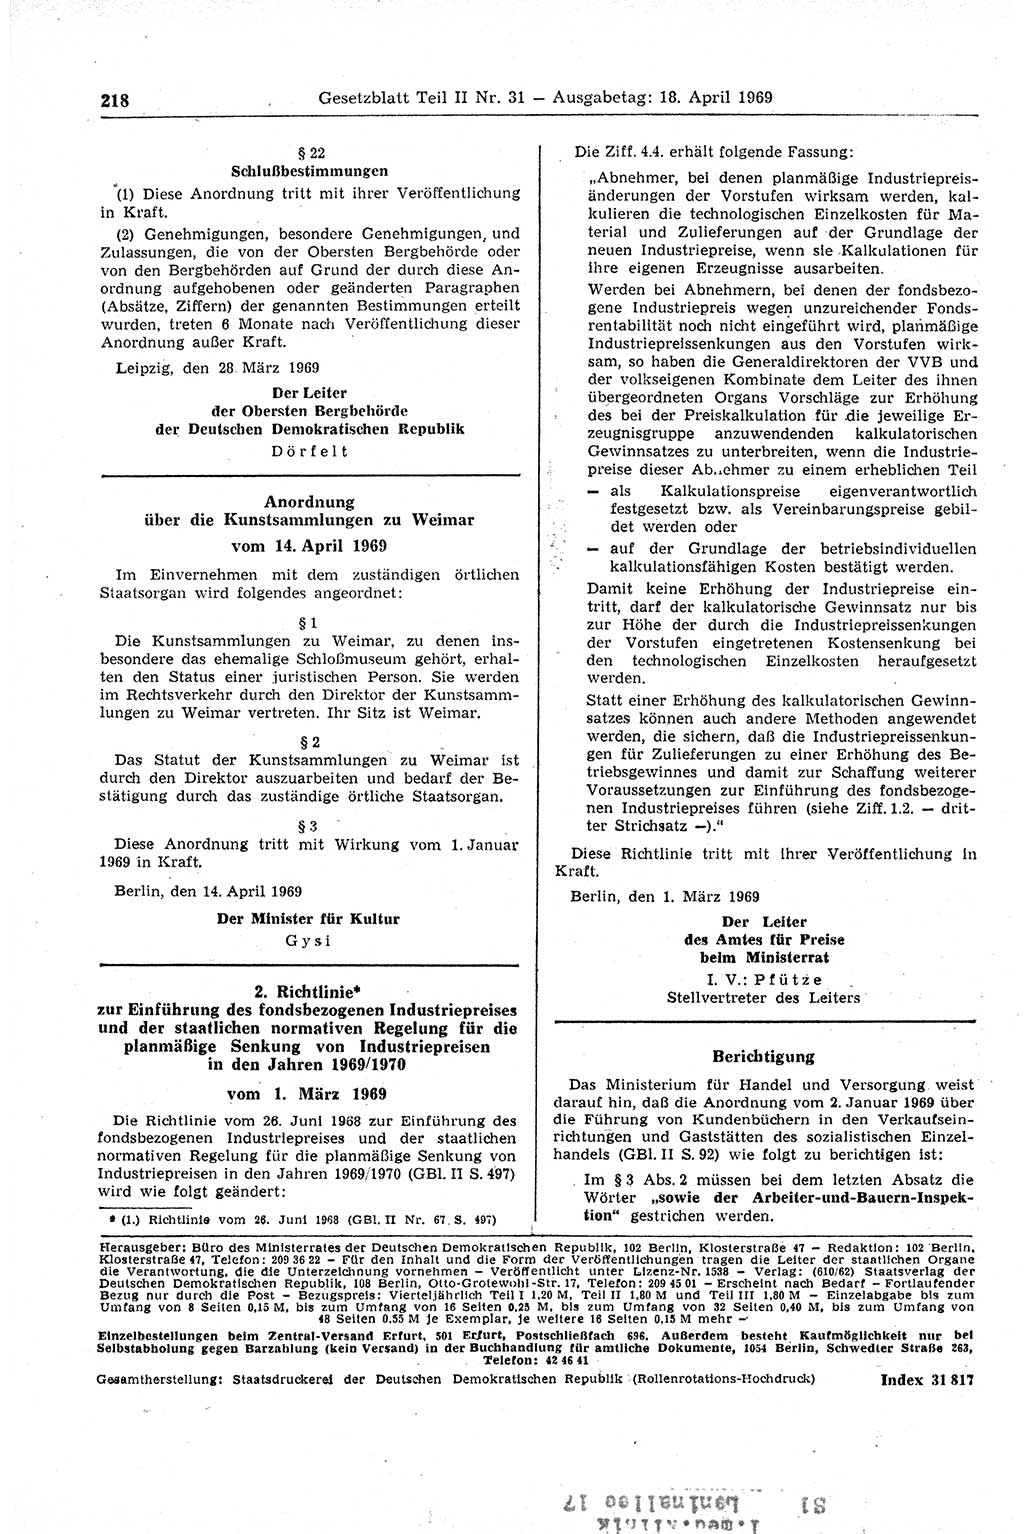 Gesetzblatt (GBl.) der Deutschen Demokratischen Republik (DDR) Teil ⅠⅠ 1969, Seite 218 (GBl. DDR ⅠⅠ 1969, S. 218)